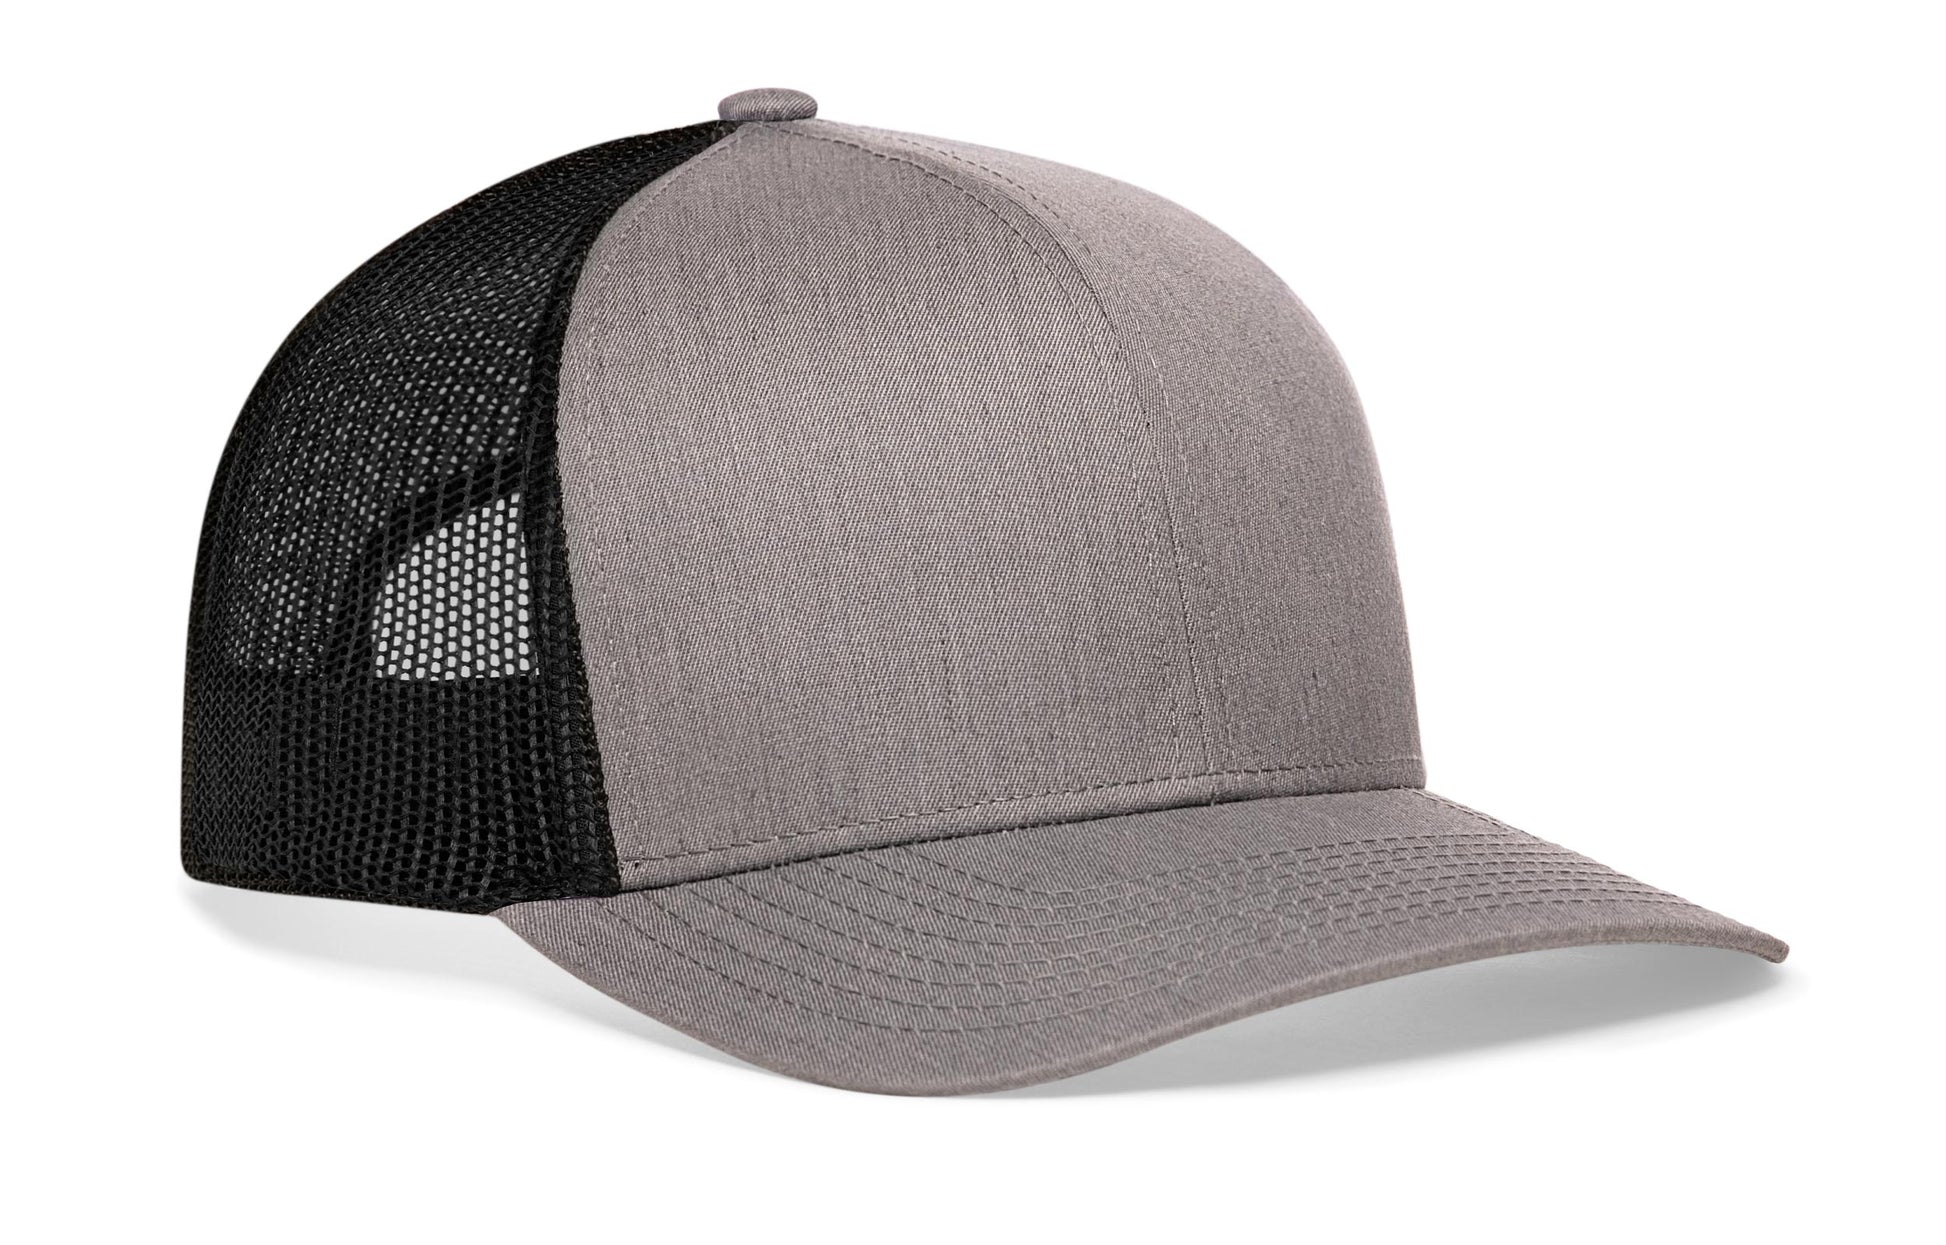 Blank Trucker Hats | Mesh Trucker Hats Black